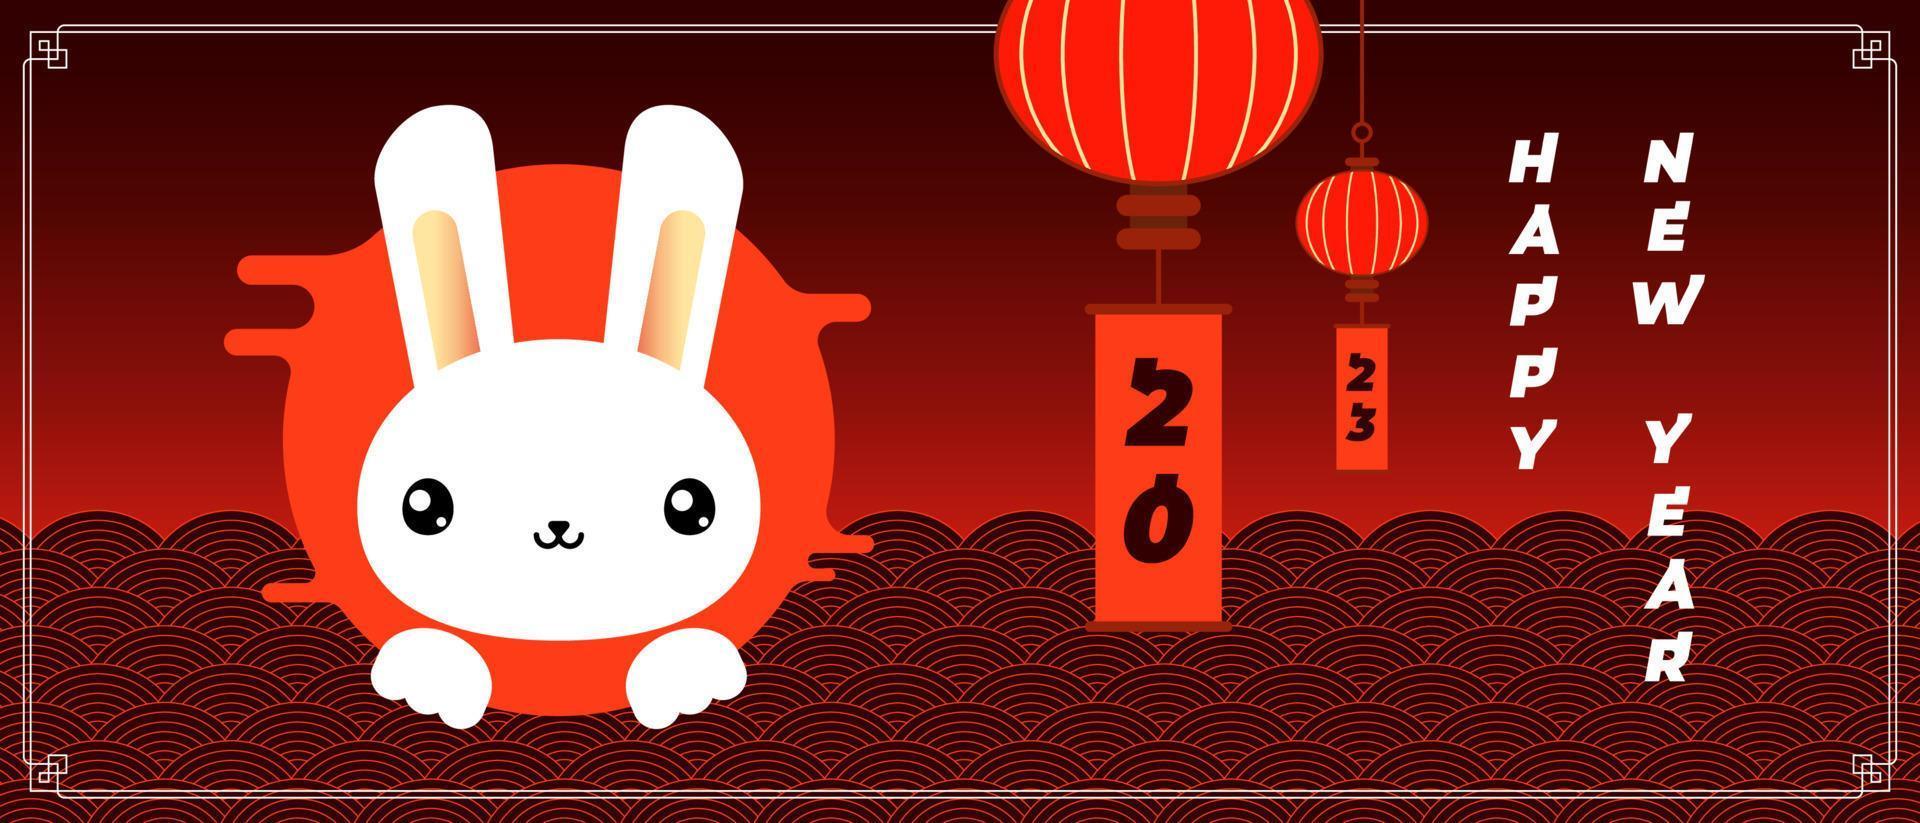 año nuevo chino de banner horizontal de conejo. tarjeta de felicitación de china símbolo del zodiaco anual tradicional estilo kawaii liebre. plantilla de póster de diseño abstracto de moda asiática para calendario oriental 2023. vector